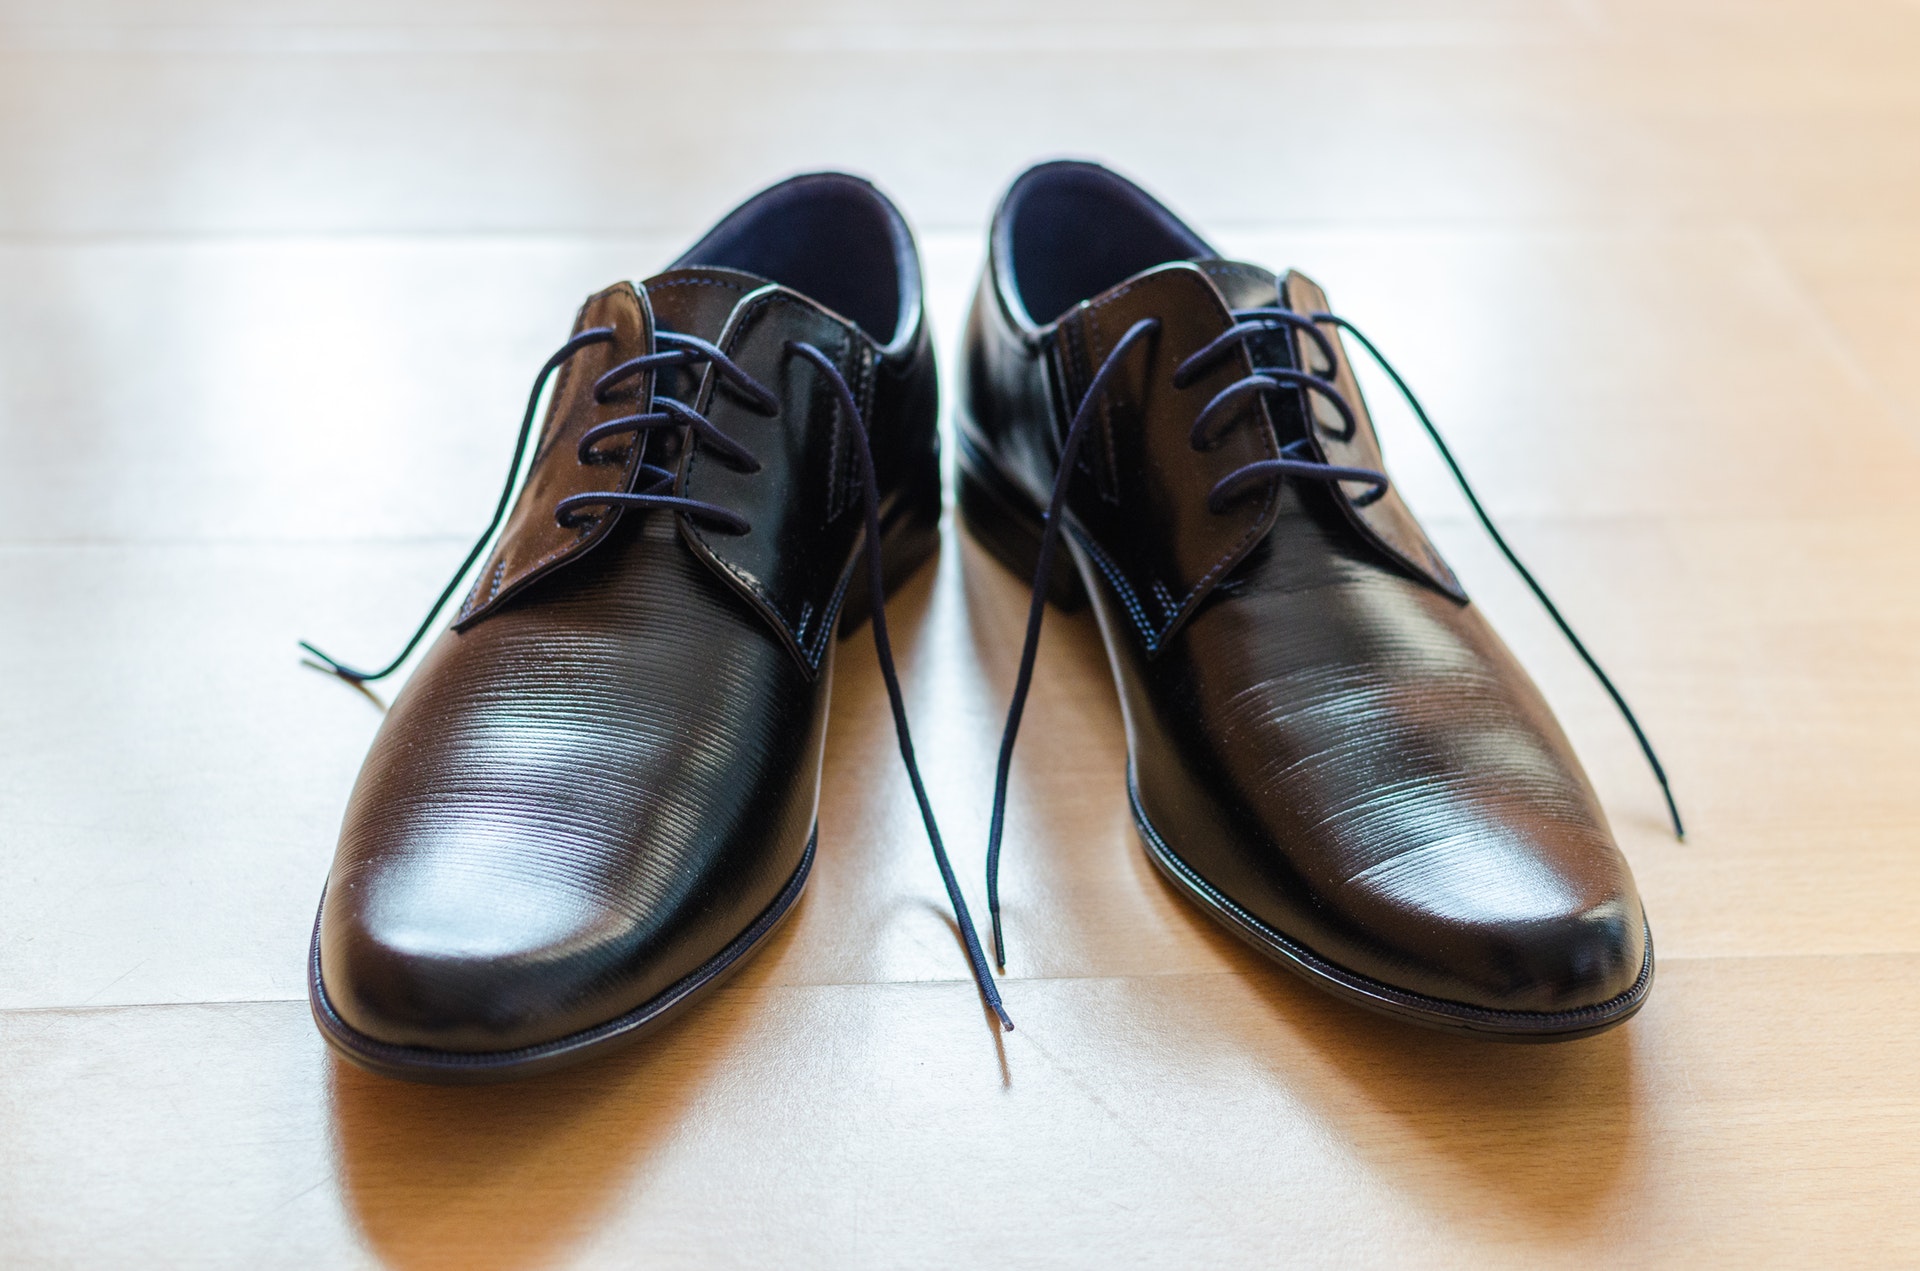 Czarne buty w stylu derby – idealne na co dzień